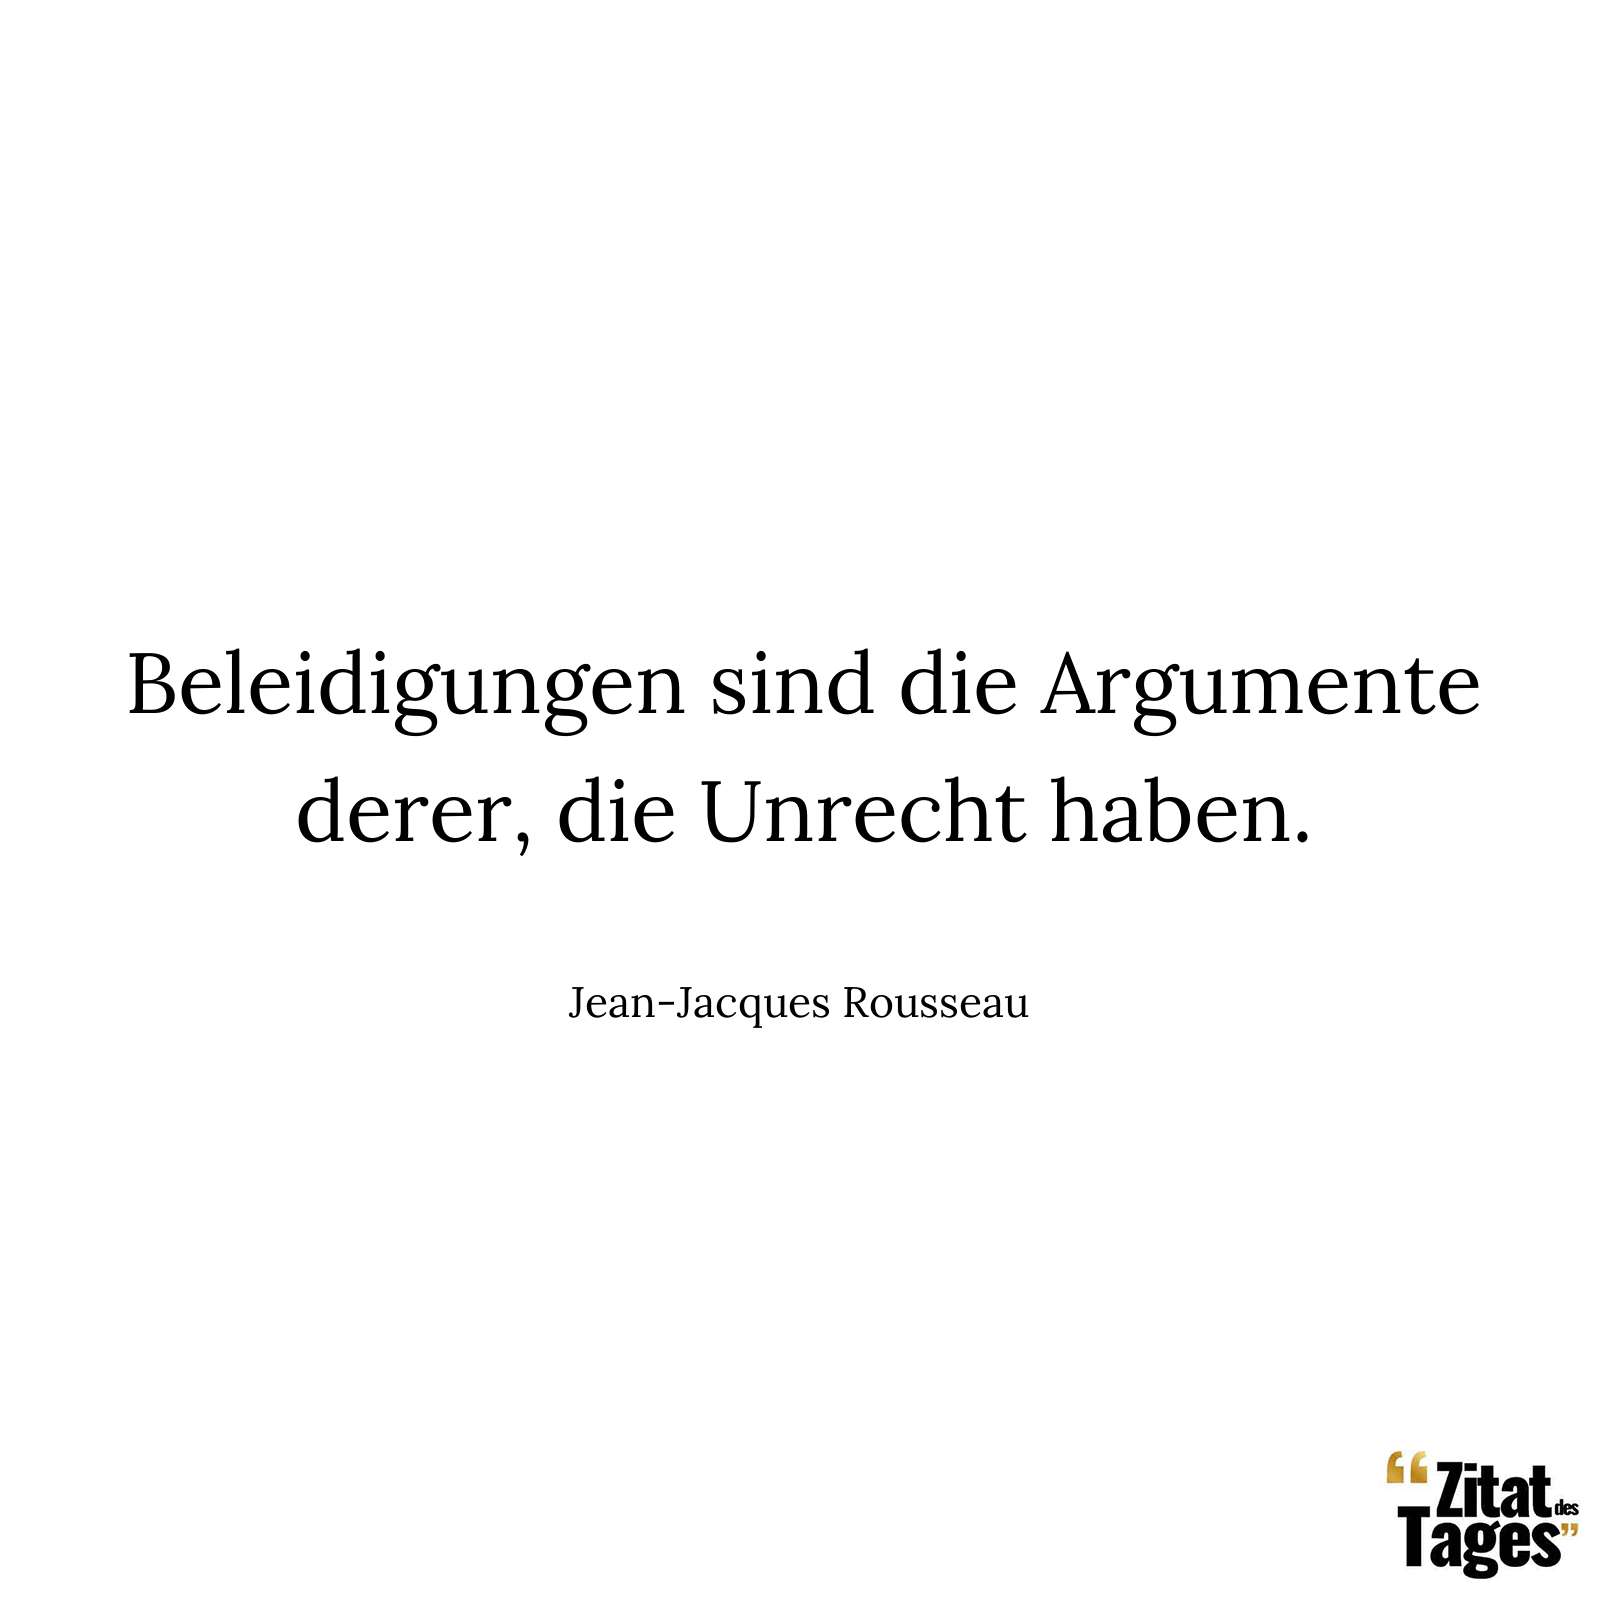 Beleidigungen sind die Argumente derer, die Unrecht haben. - Jean-Jacques Rousseau